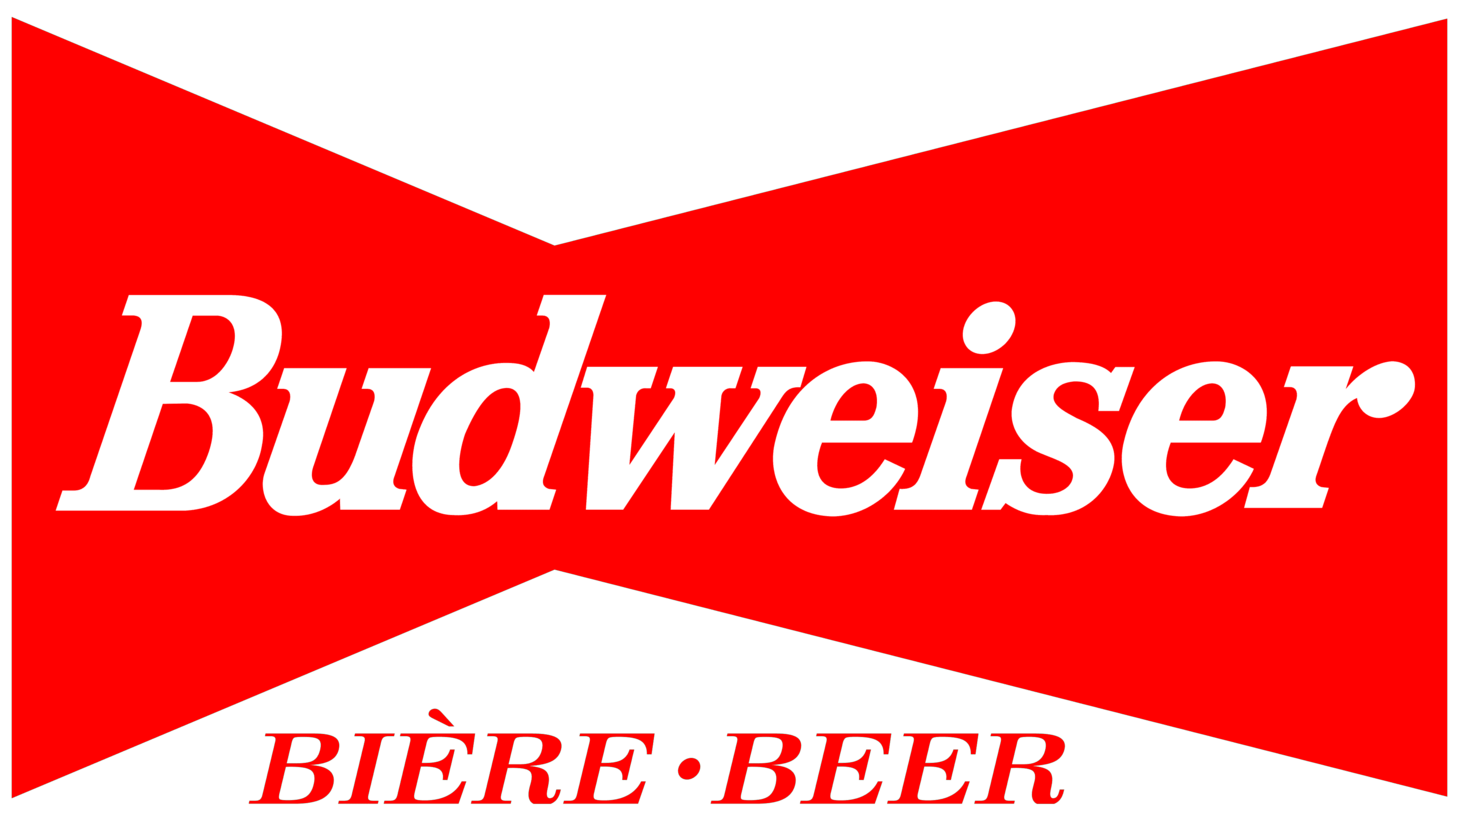 Budweiser sign 1994 1999